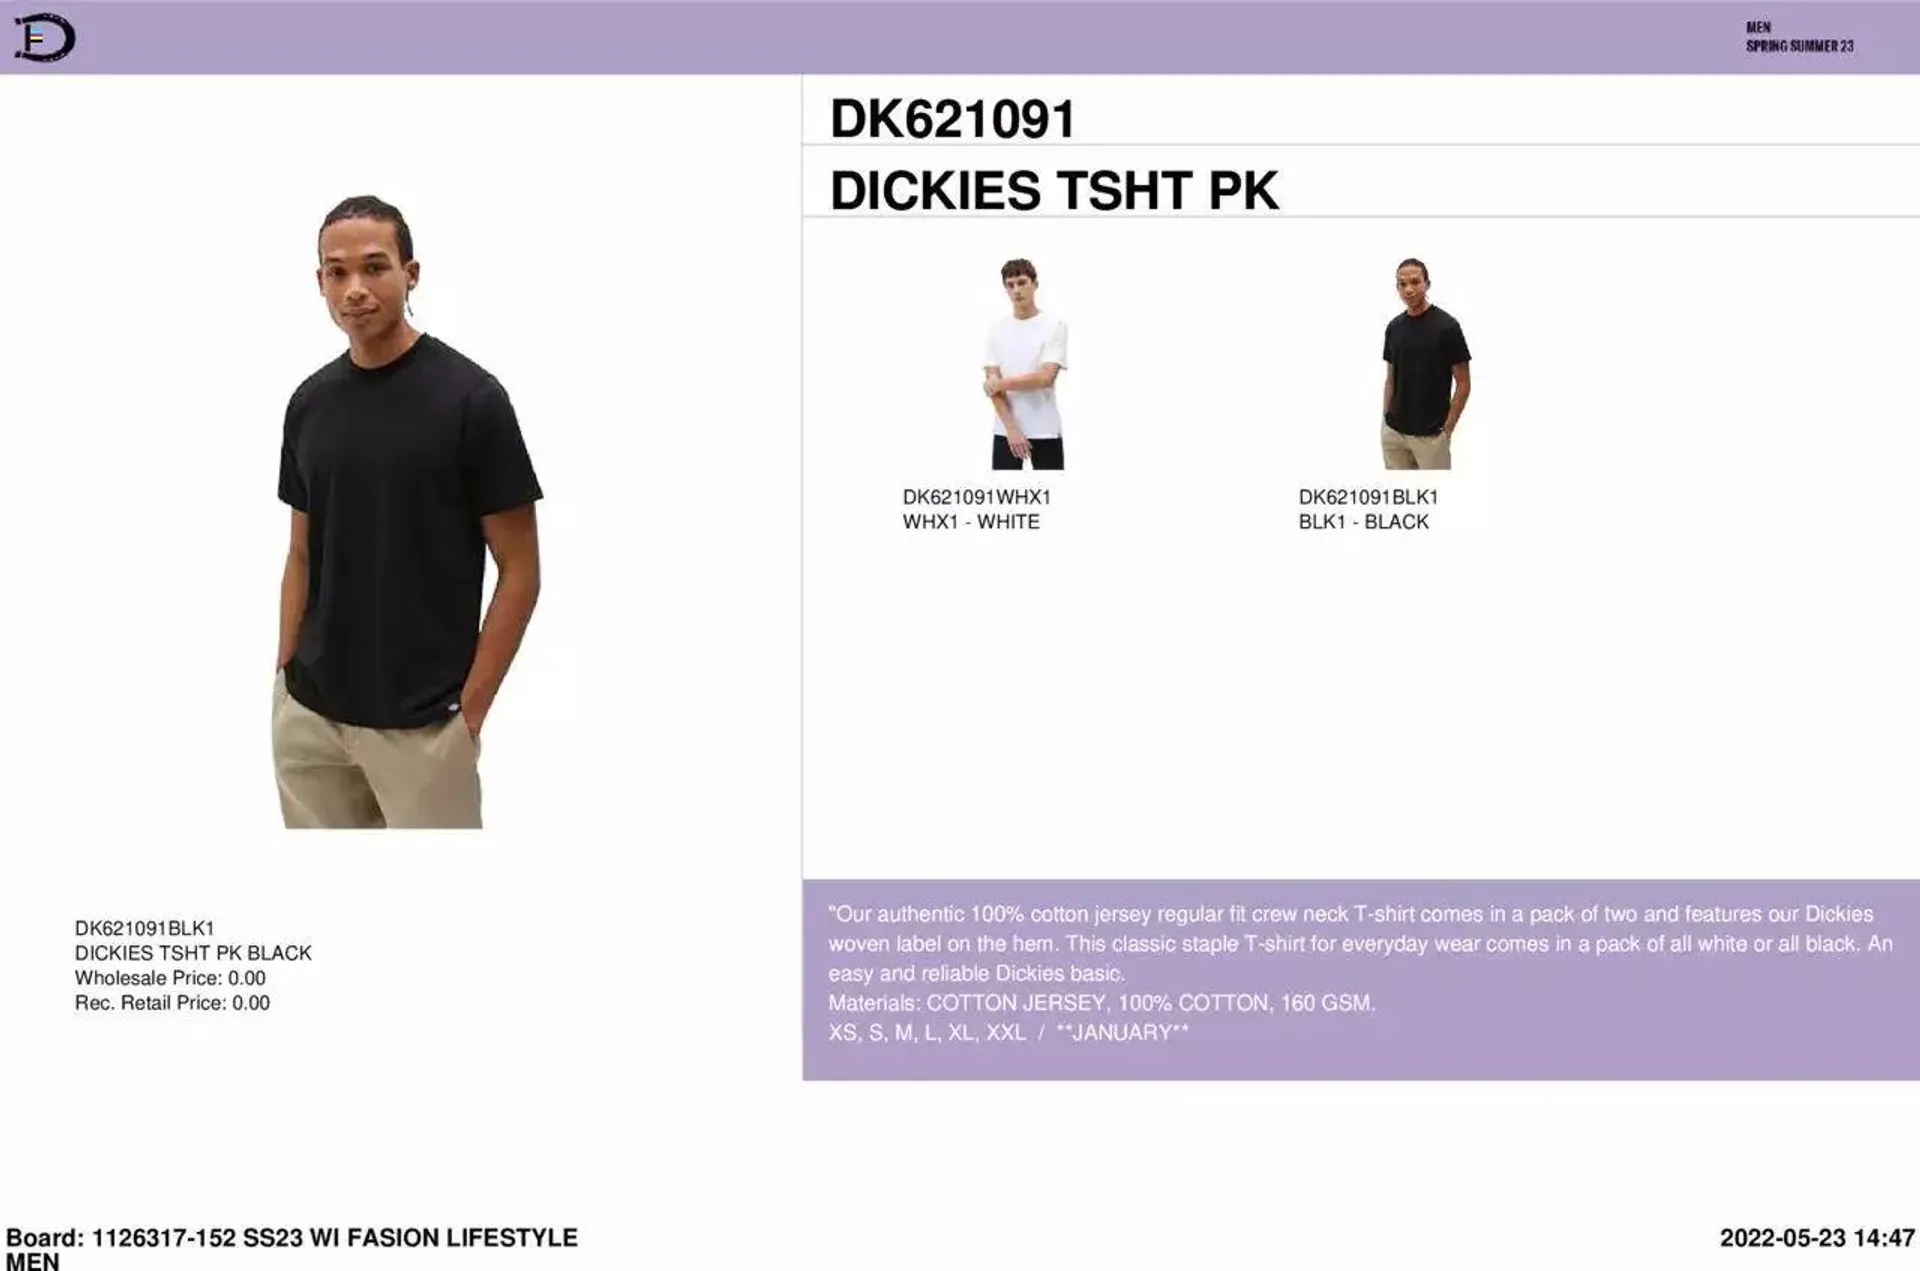 Dickies - Menswear Workbook - 151